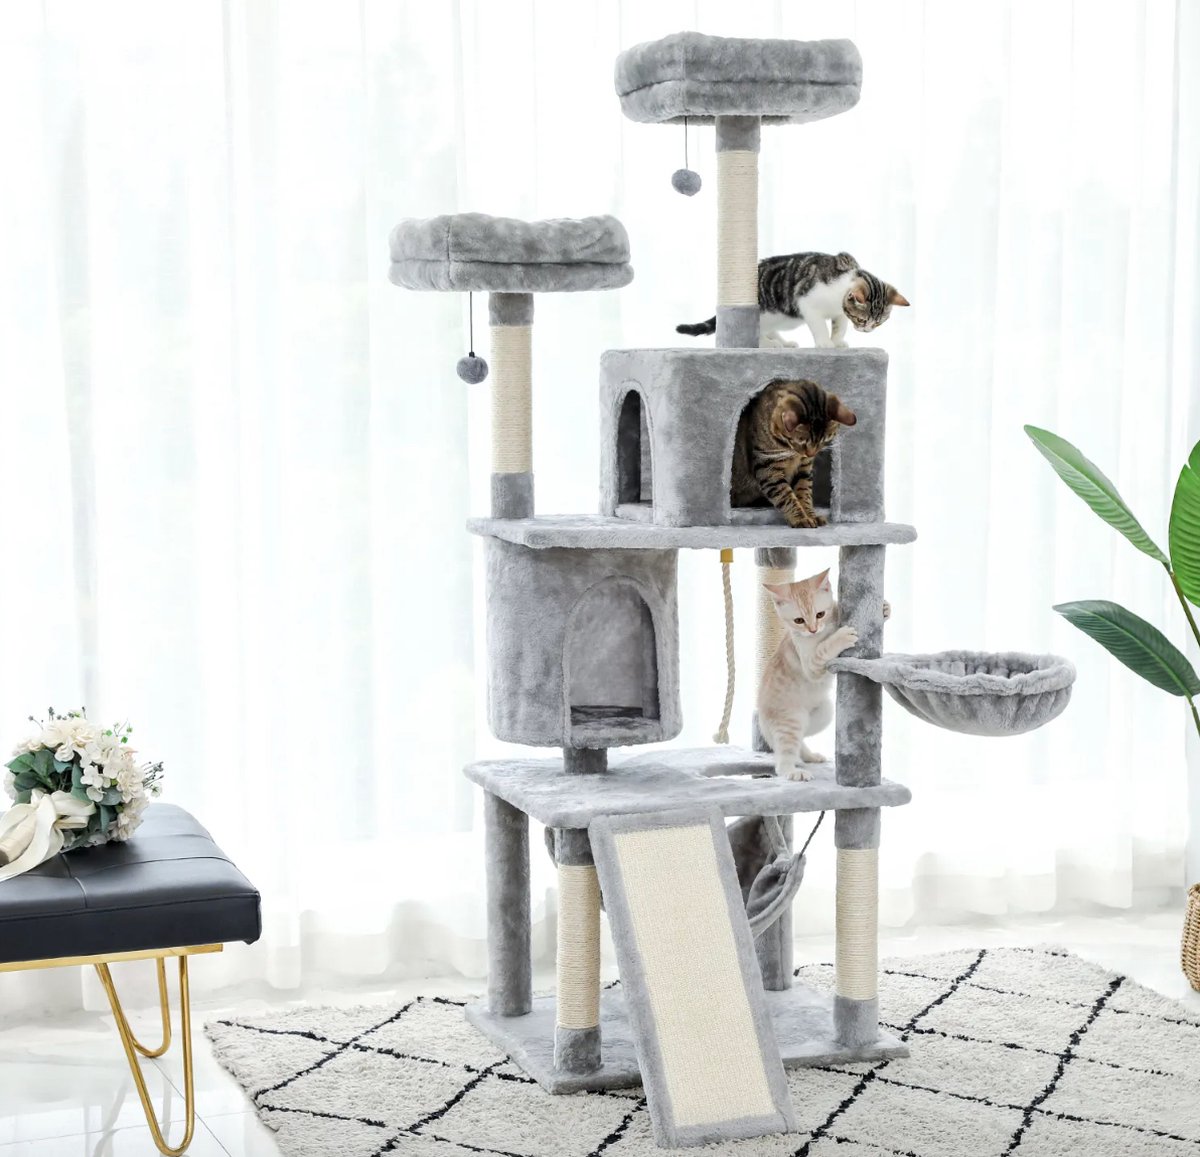 Goldtrix - Krabpaal - Krabpaal voor grote Katten - Kattenboom - krappaal - indoor cozy - 172 cm Hoog - Lichtgrijs